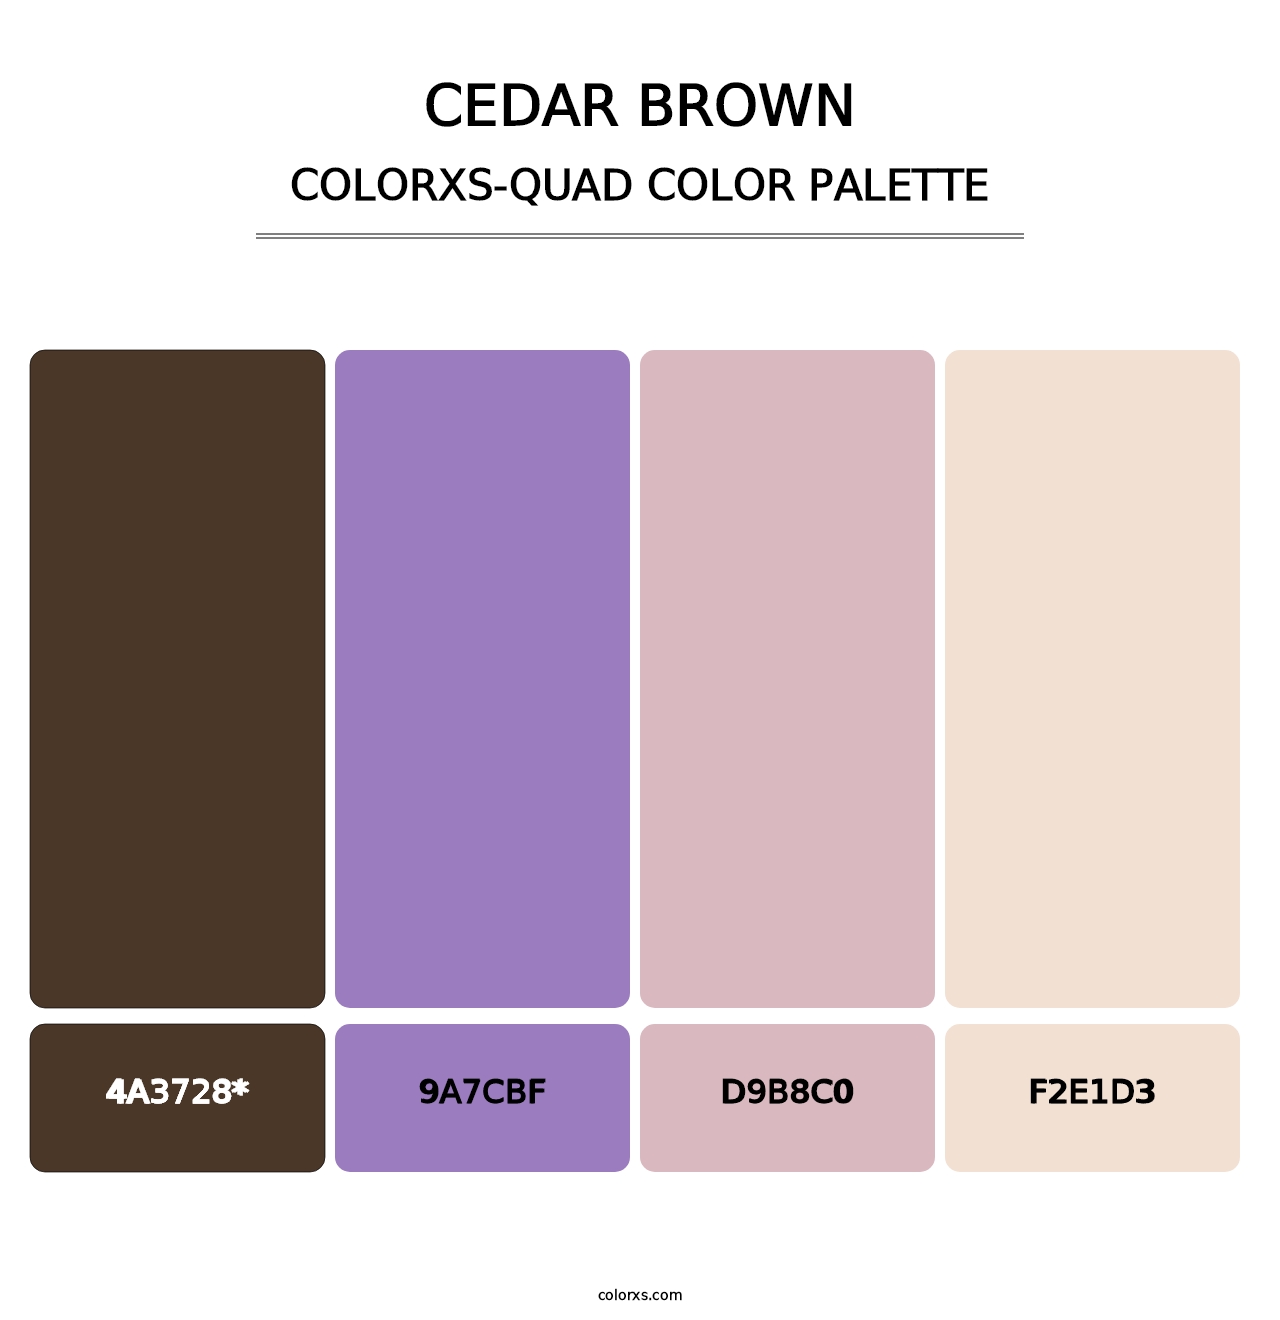 Cedar Brown - Colorxs Quad Palette